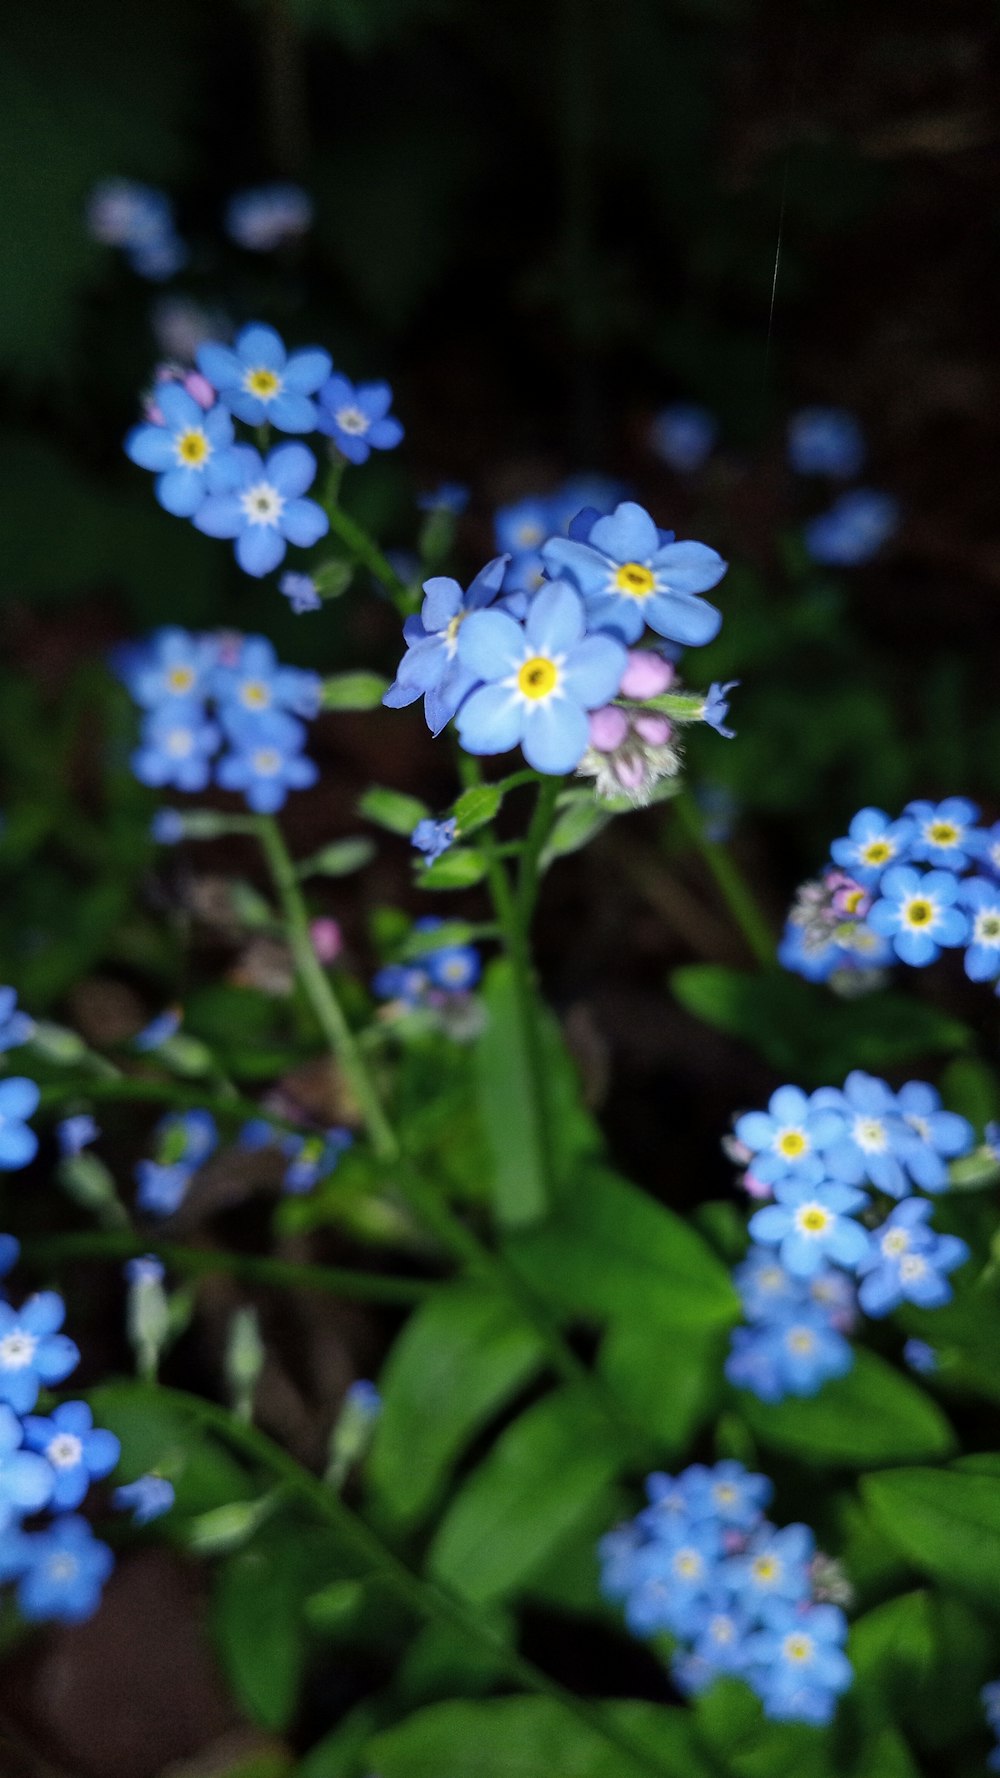 fleurs bleues et blanches dans une lentille à bascule